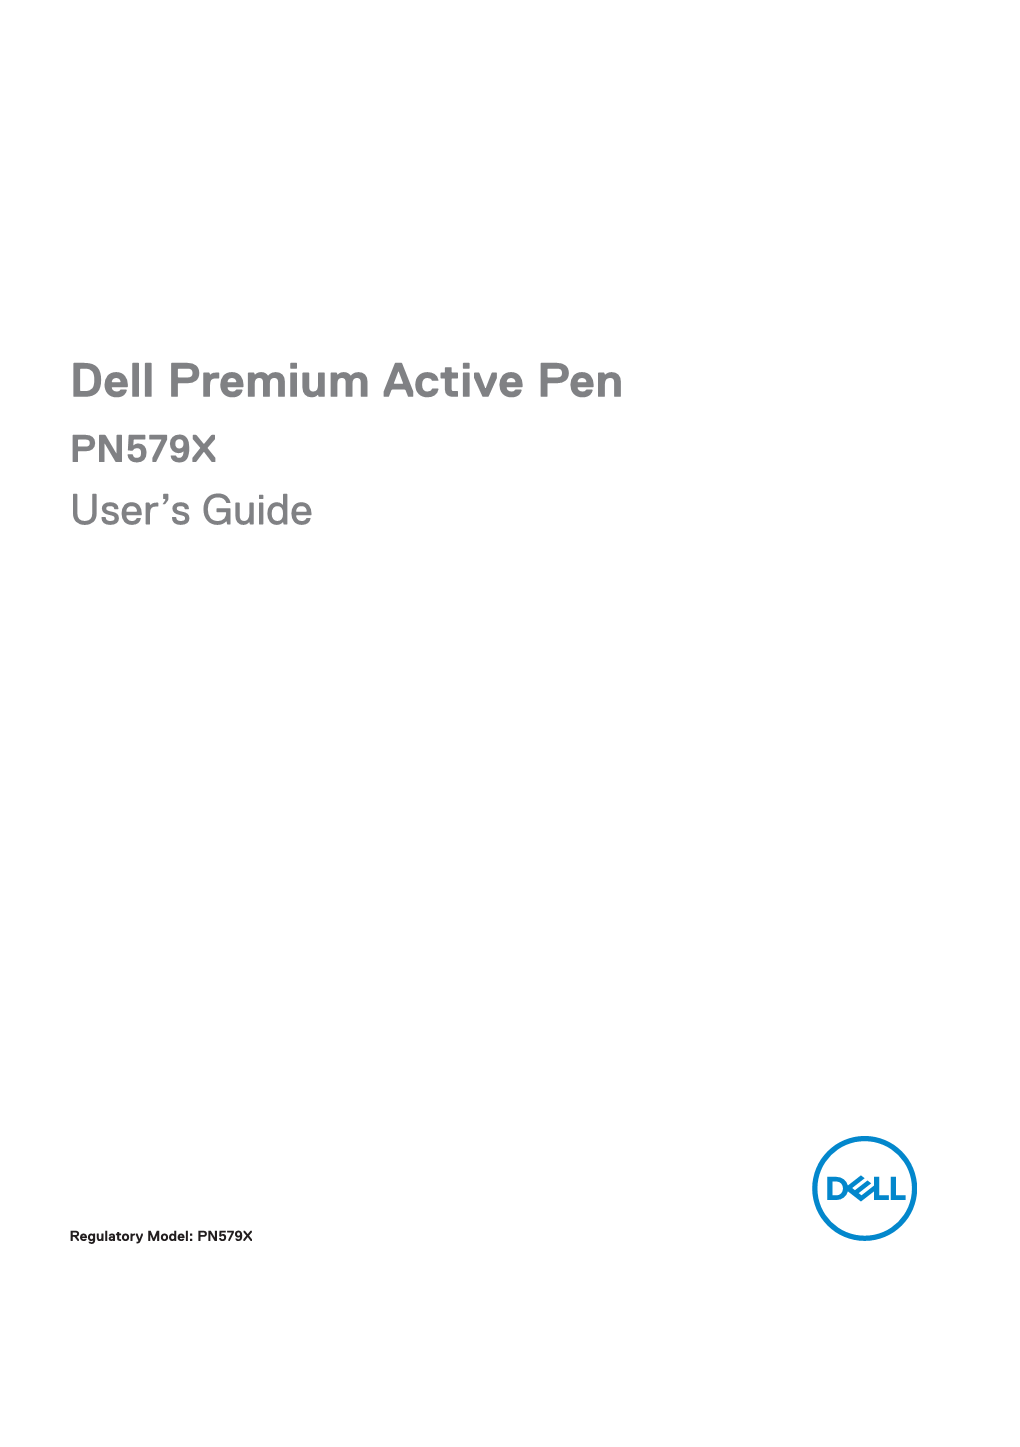 Dell Premium Active Pen PN579X User's Guide